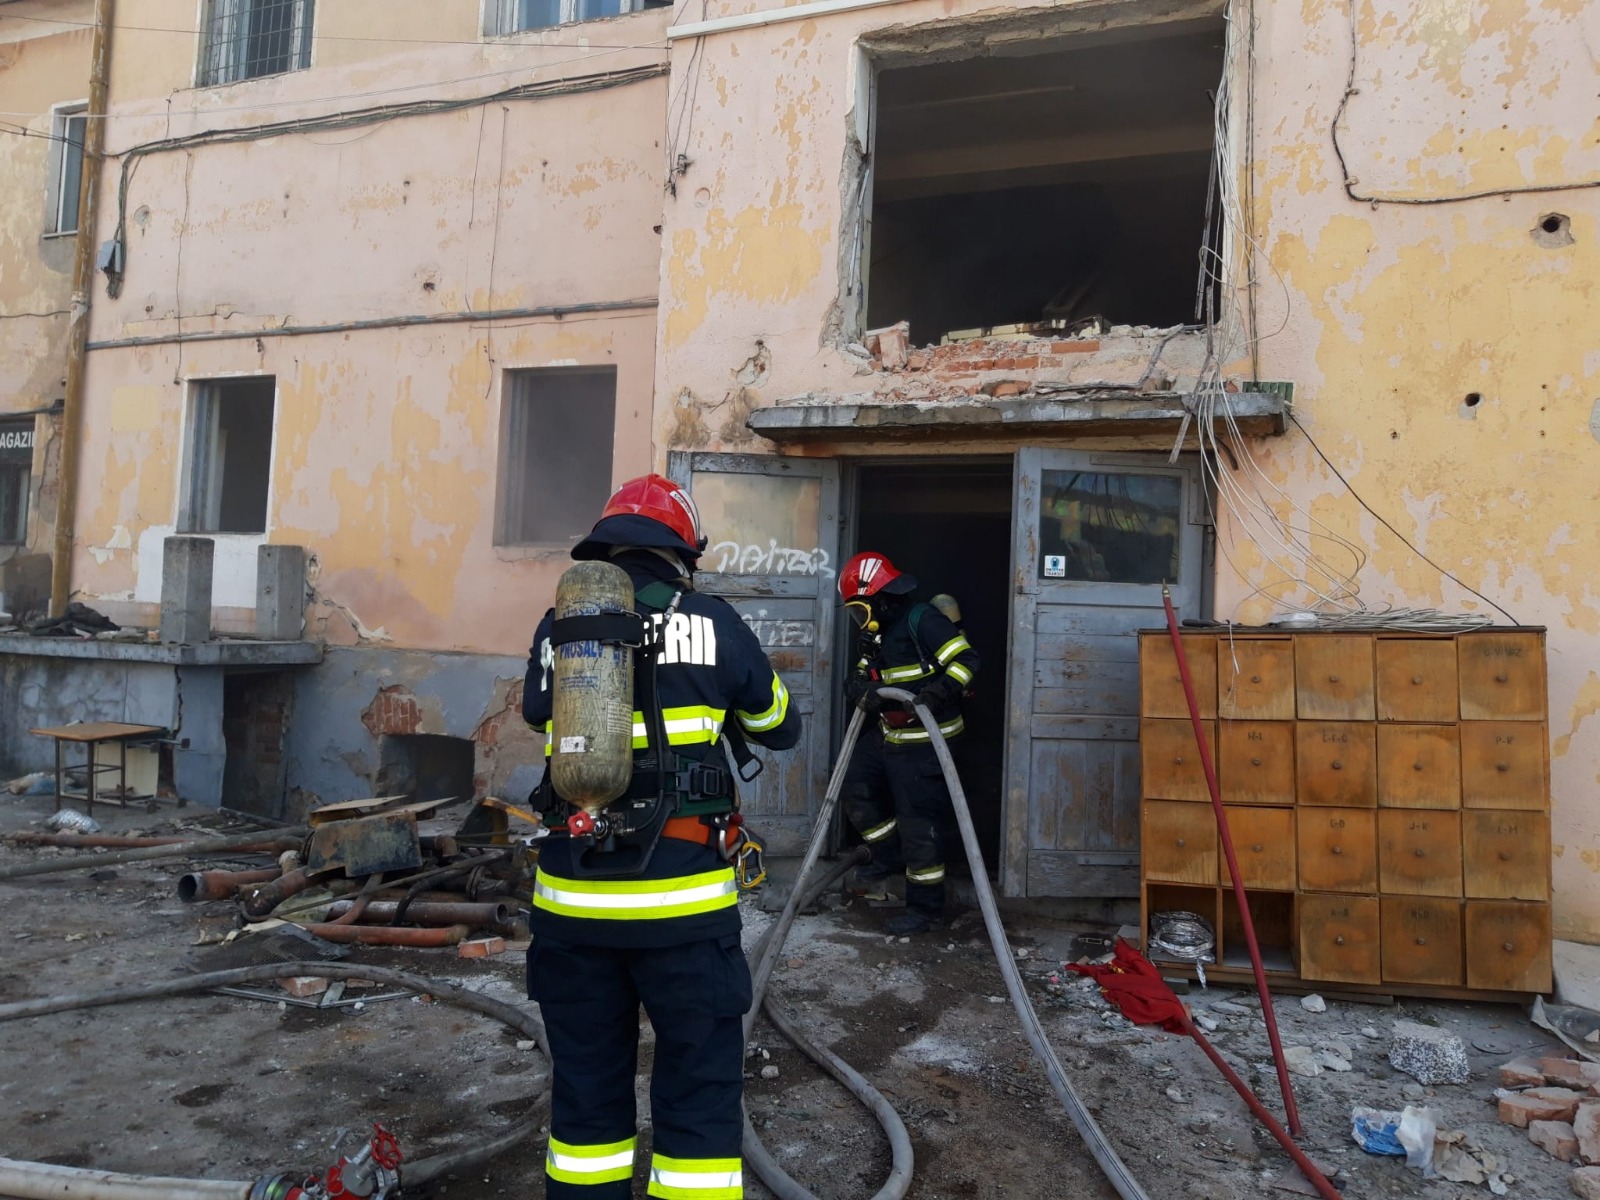 FOTO: Incendiu cu pericol de deflagrație la subsolul unei clădiri aflate peste drum de școala Nicolae Bălcescu, 14.03.2023